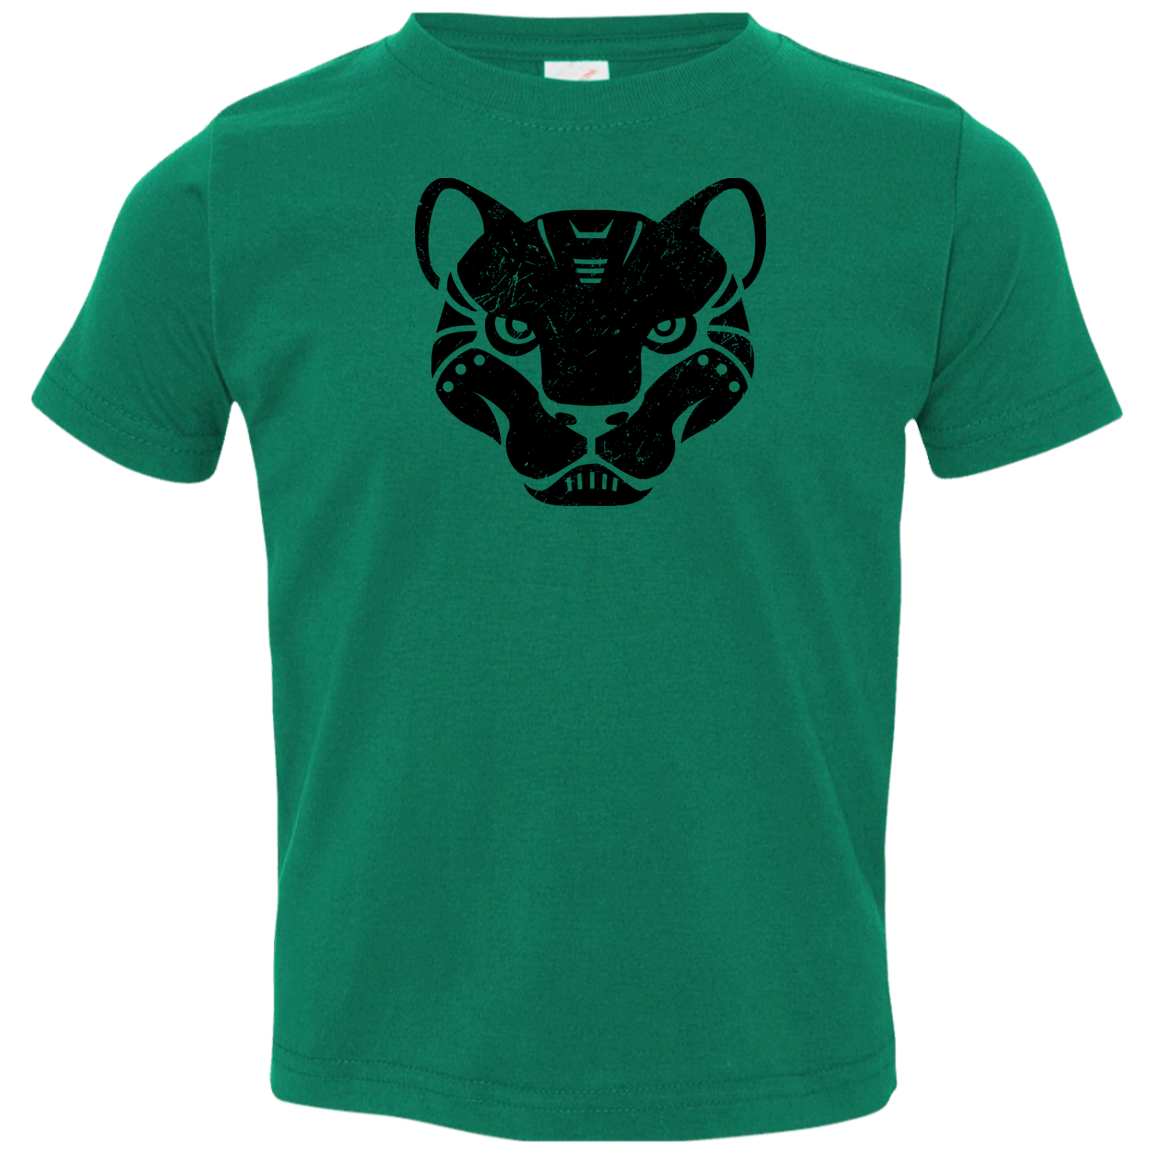 Black Distressed Emblem T-Shirt for Toddlers (Panther/Slash)